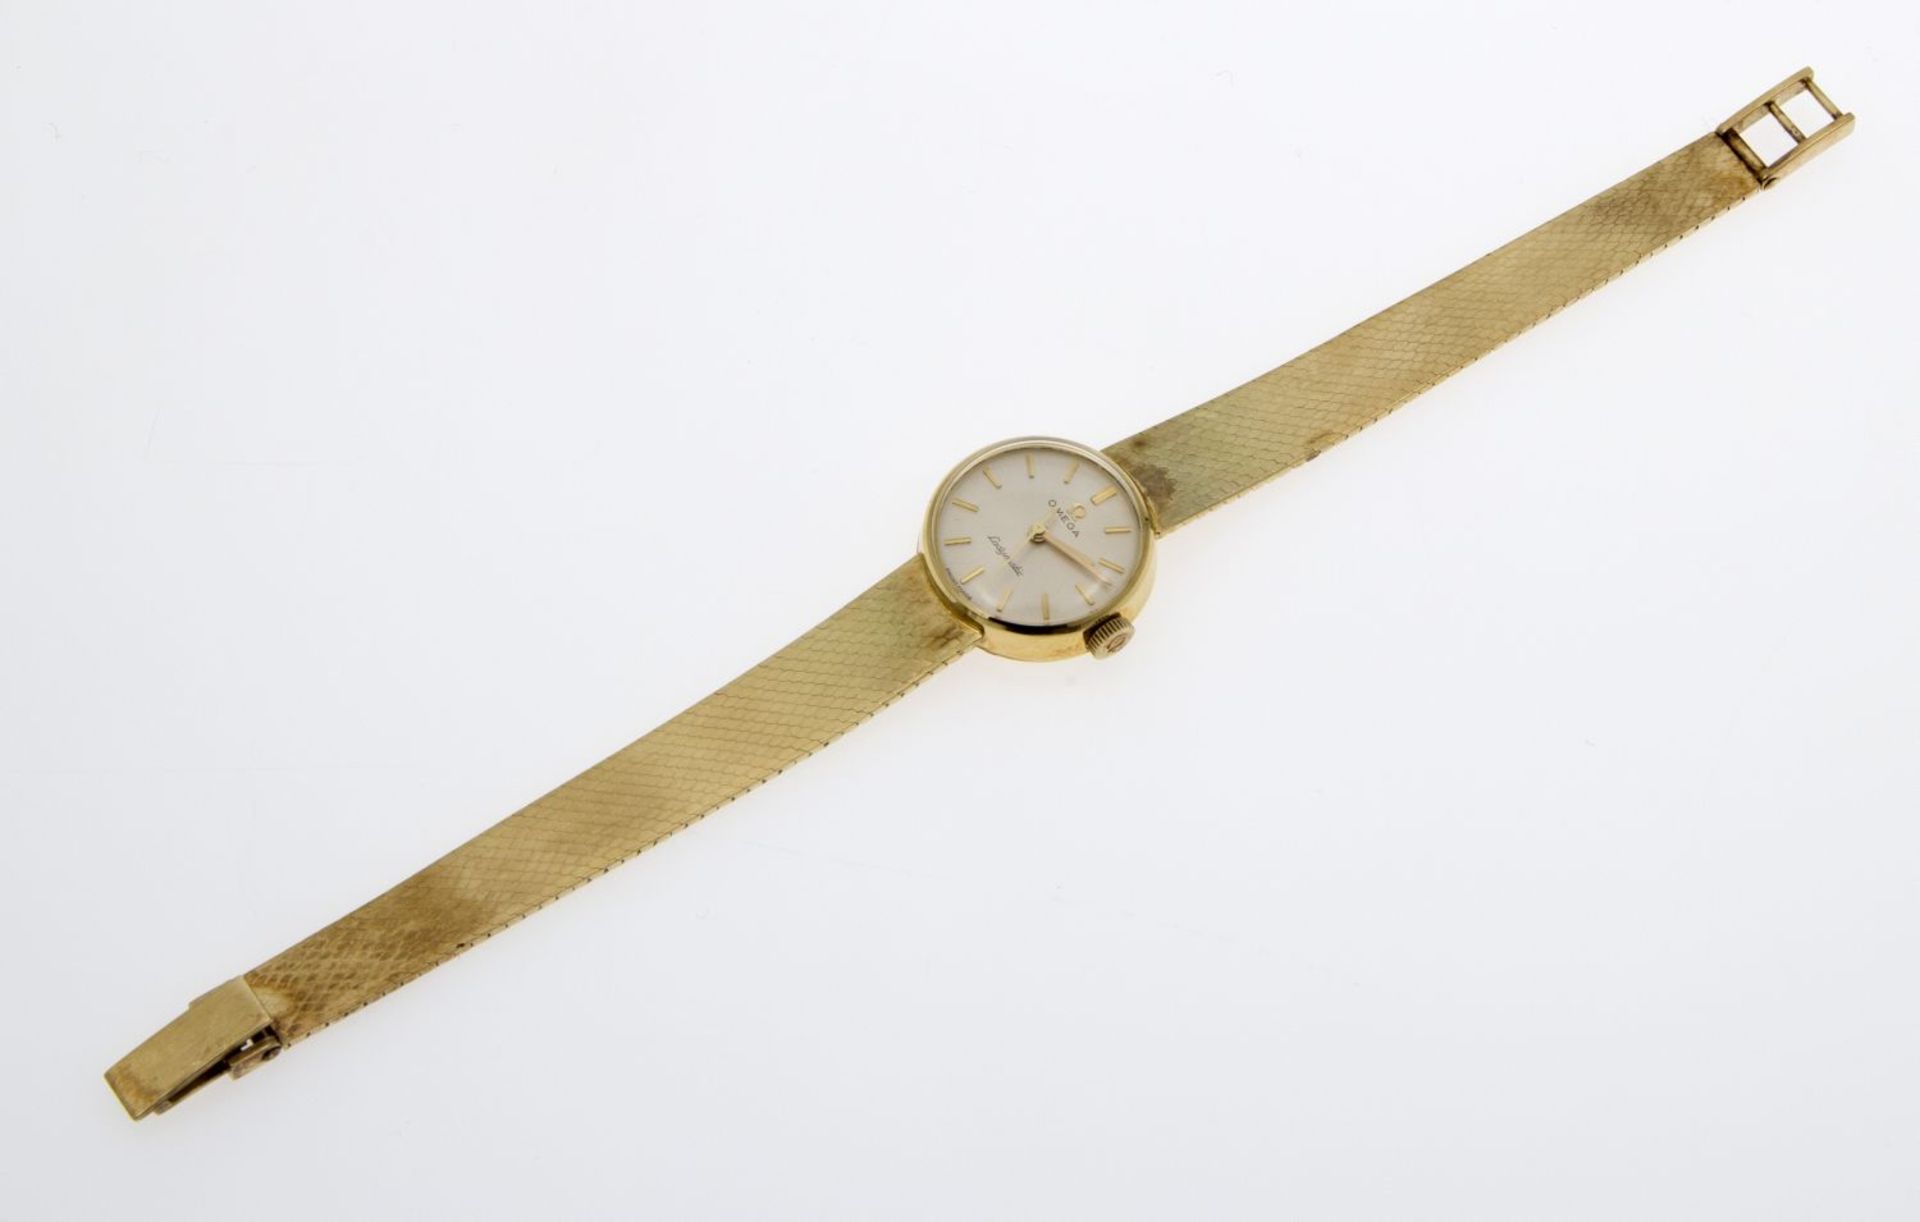 DamenarmbanduhrGehäuse und Armband aus Gelbgold 585. Rundes silberfarbenes Zifferblatt mit - Image 2 of 3